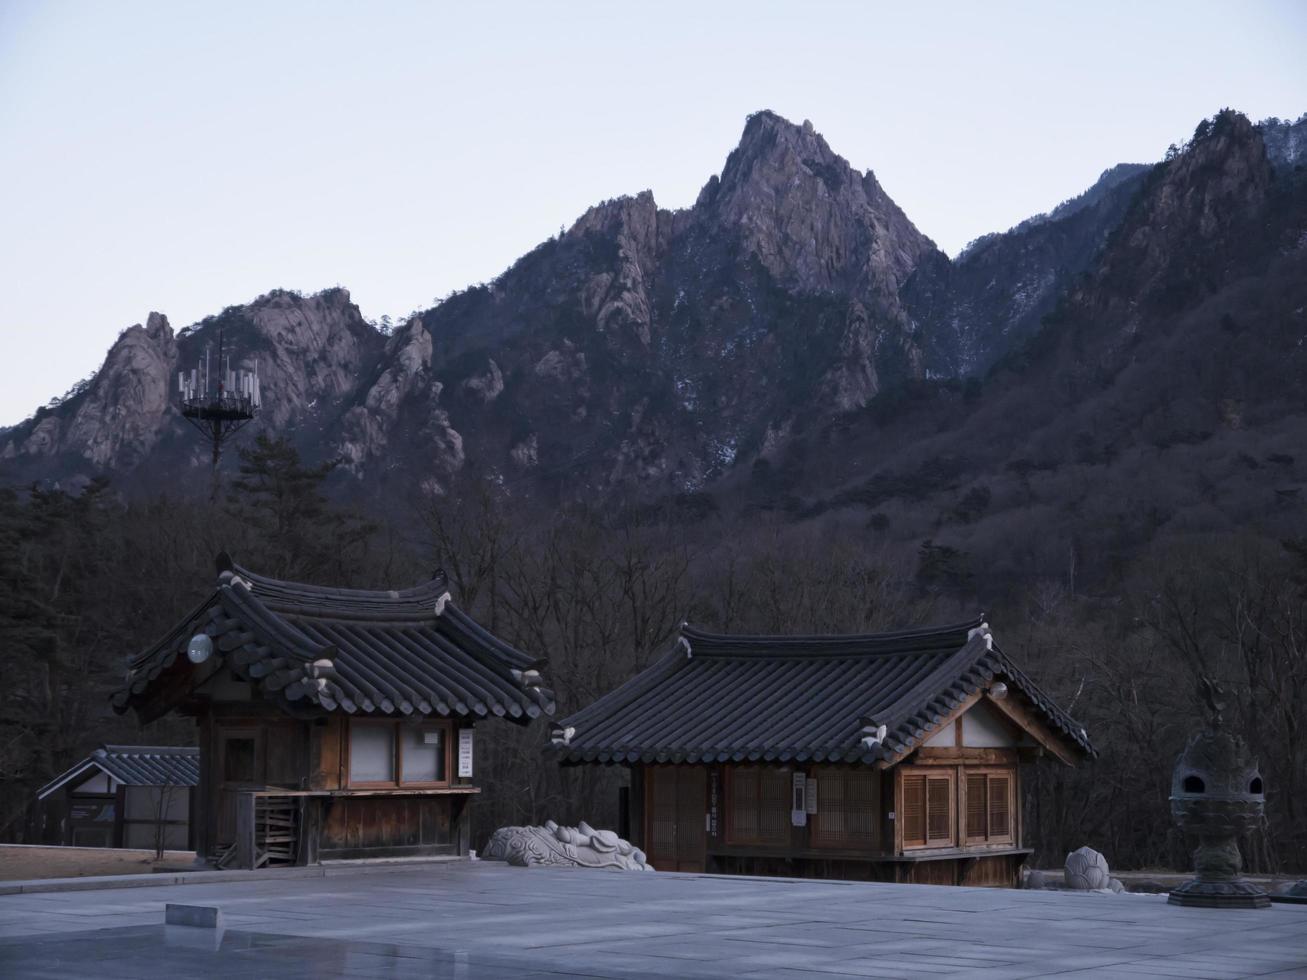 casas asiáticas en el templo de sinheungsa. parque nacional de seoraksan. Corea del Sur foto